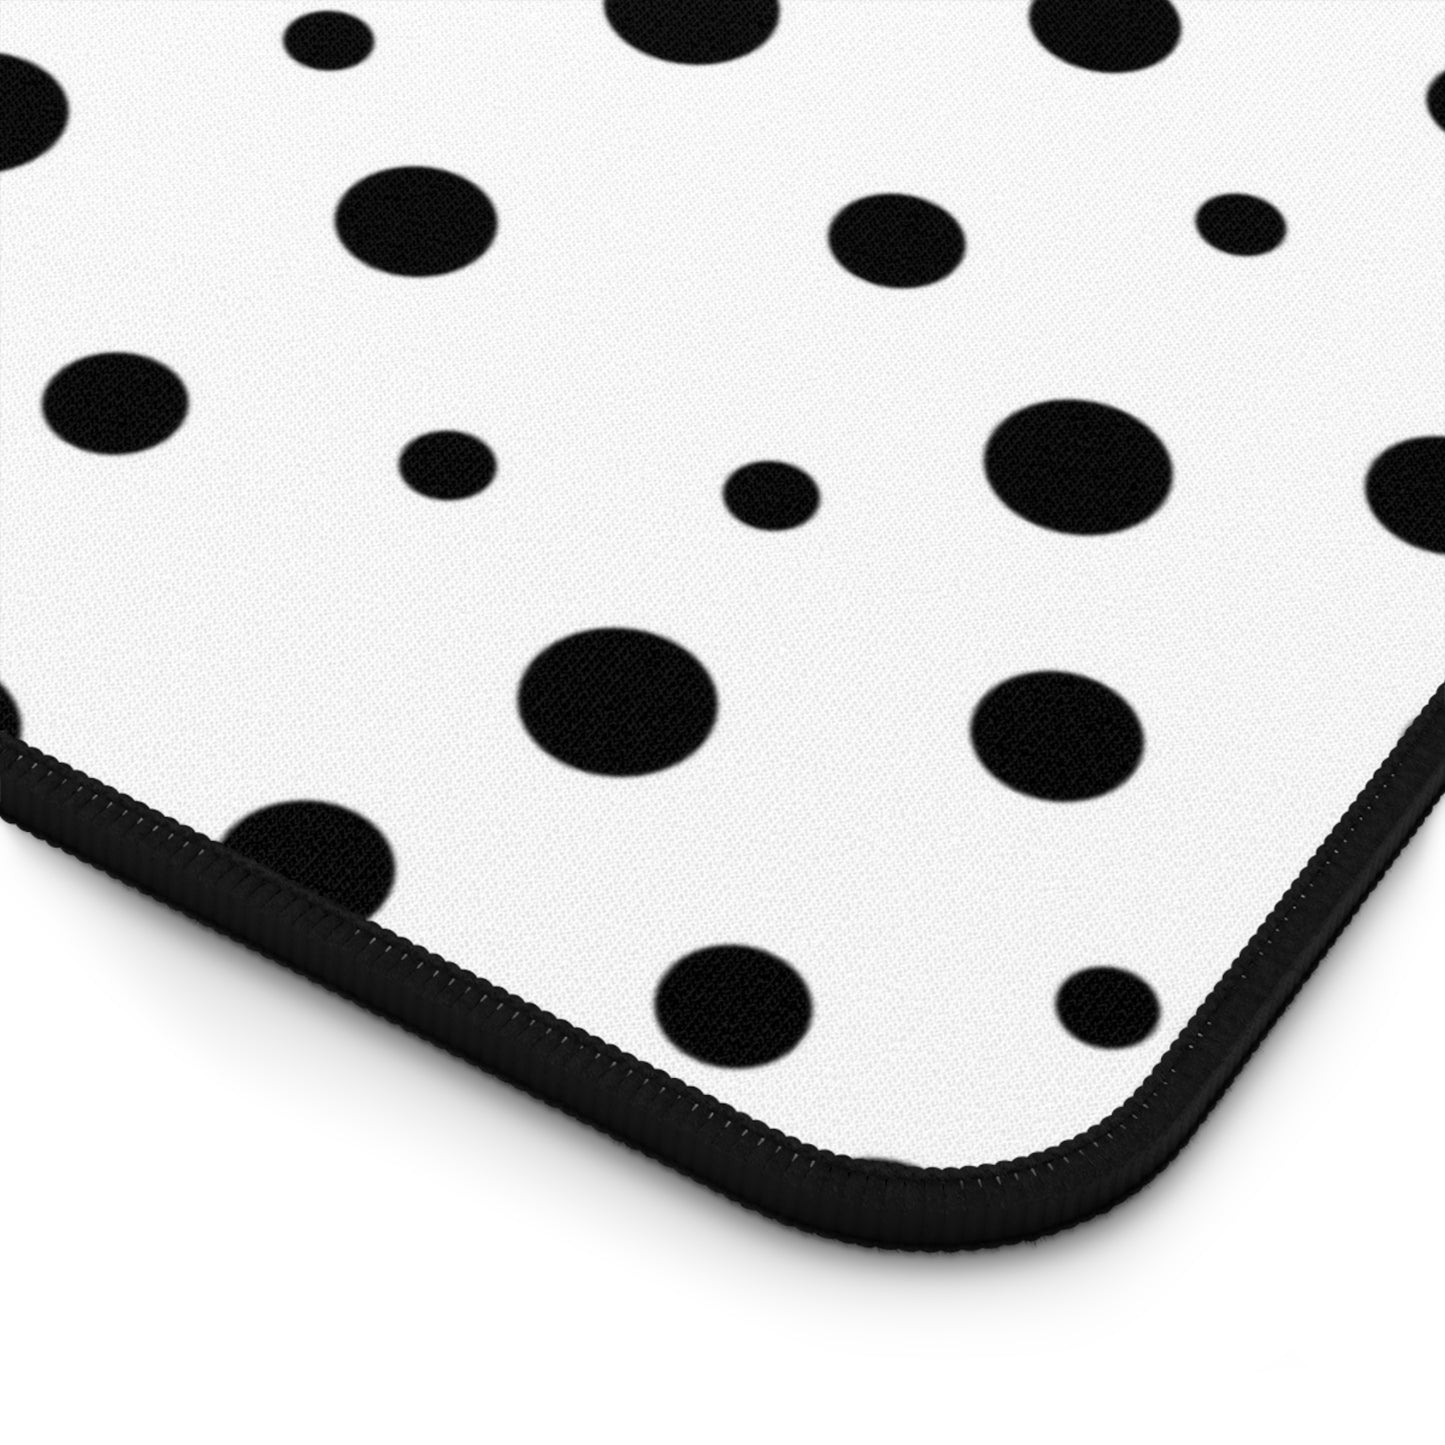 Black Dots & White Desk Mat - Desk Cookies